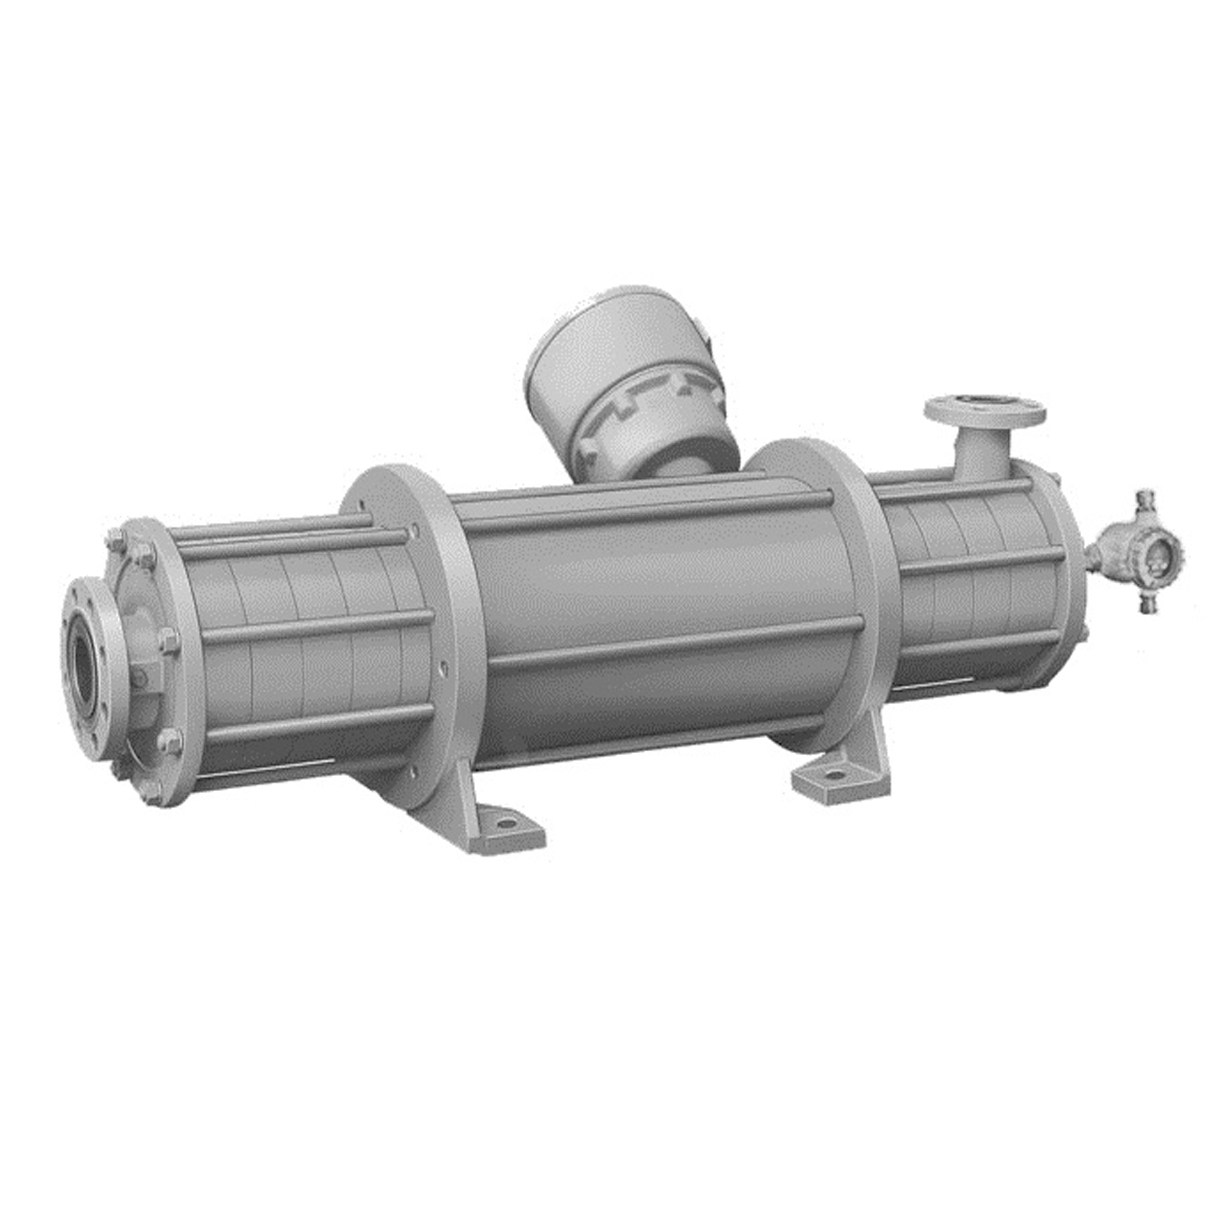 Refrigeration pump series cam1 cam2